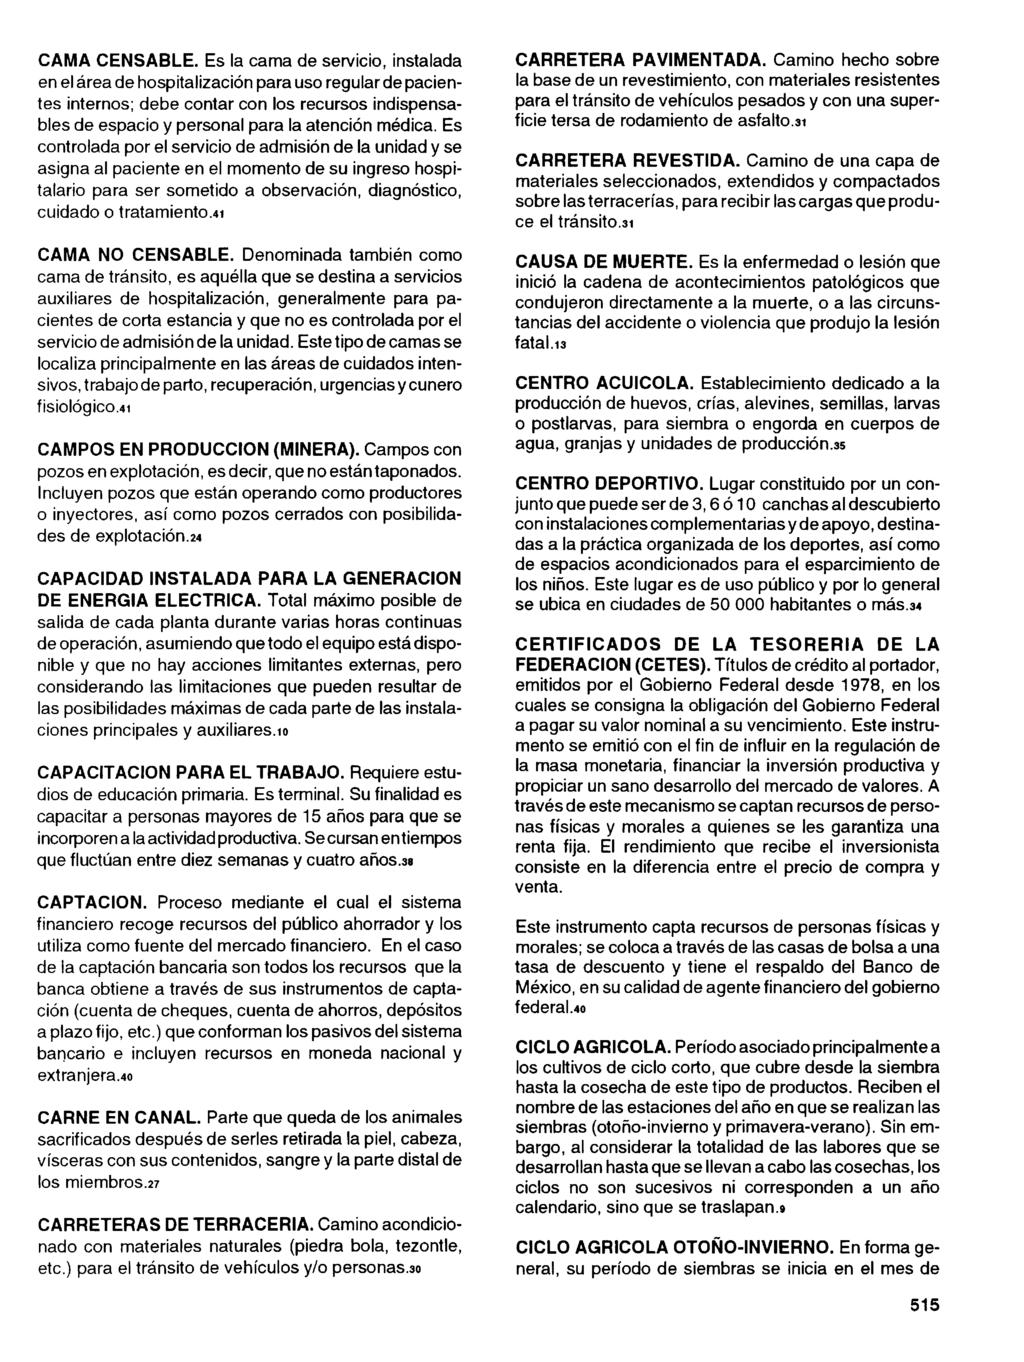 INEGI. Anuario estadístico del estado de Oaxaca. CAMA CENSABLE.